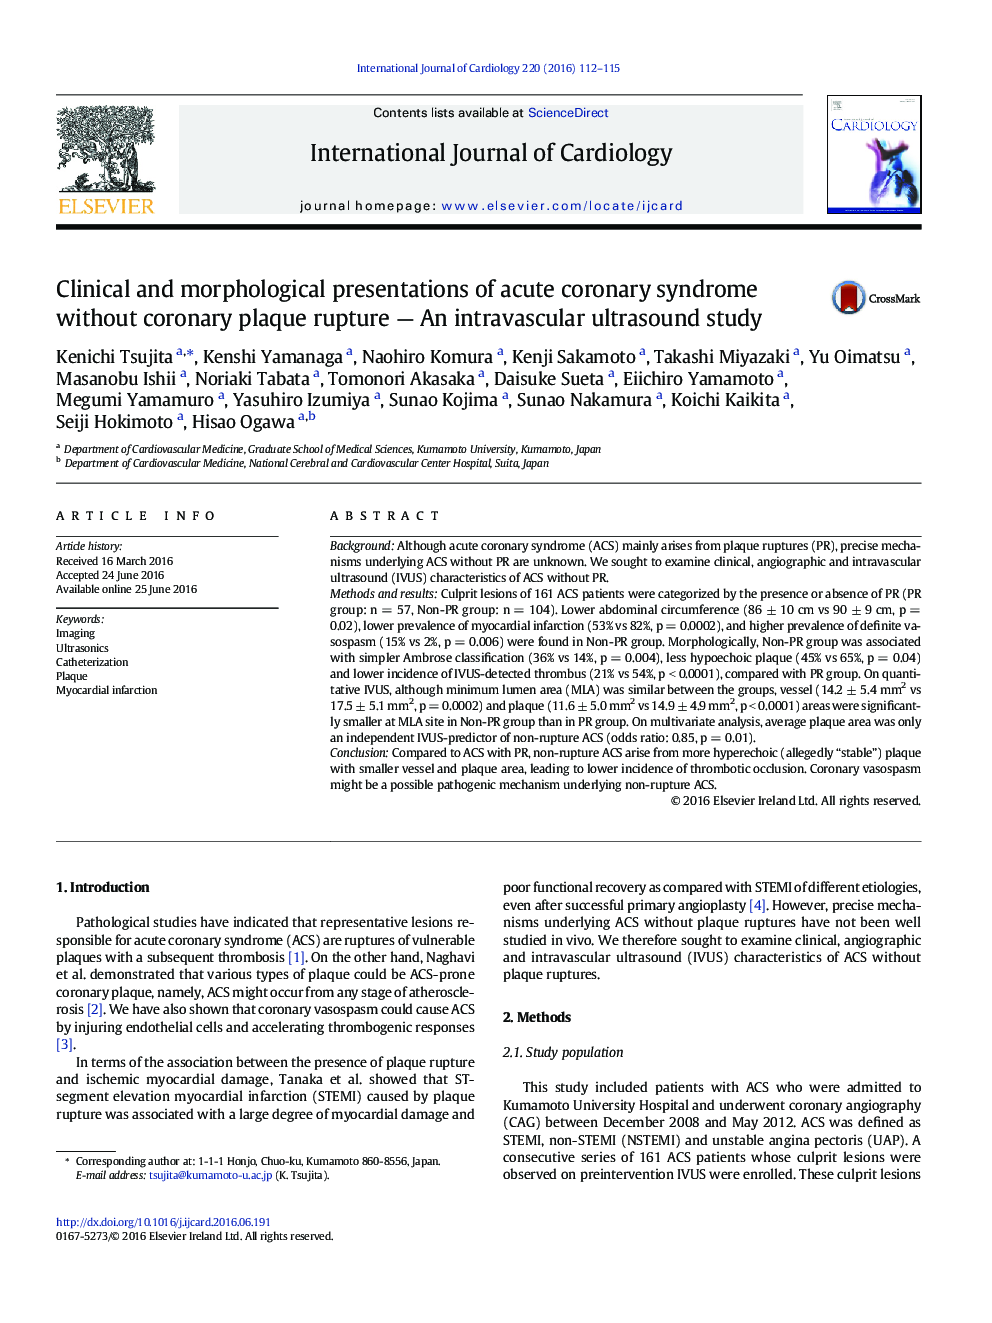 ارائه بالینی و مورفولوژیکی سندرم حاد کرونری بدون پلاکت کرونر - یک مطالعه سونوگرافی داخل عروقی 